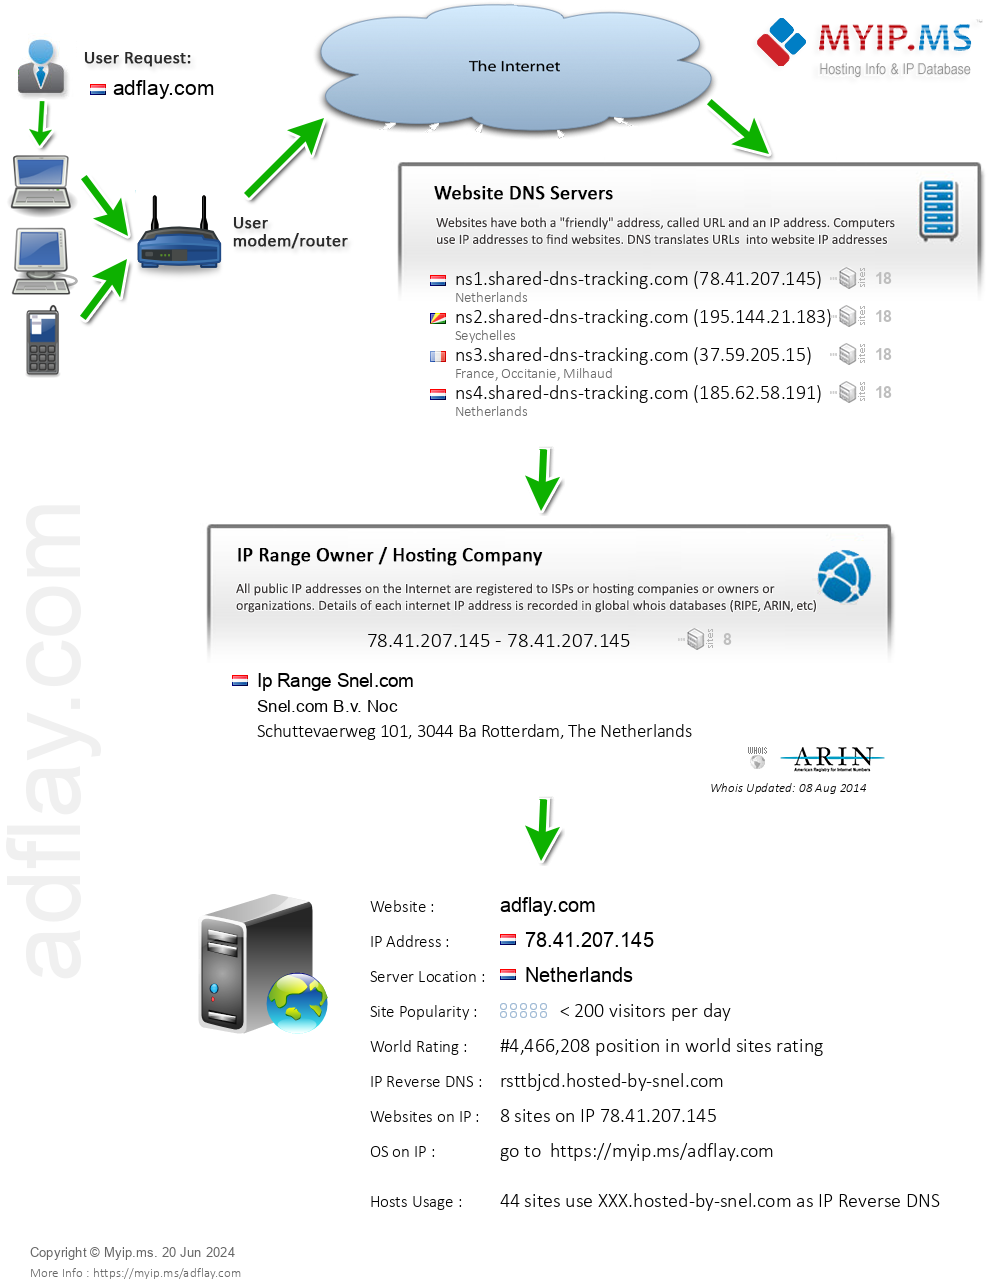 Adflay.com - Website Hosting Visual IP Diagram